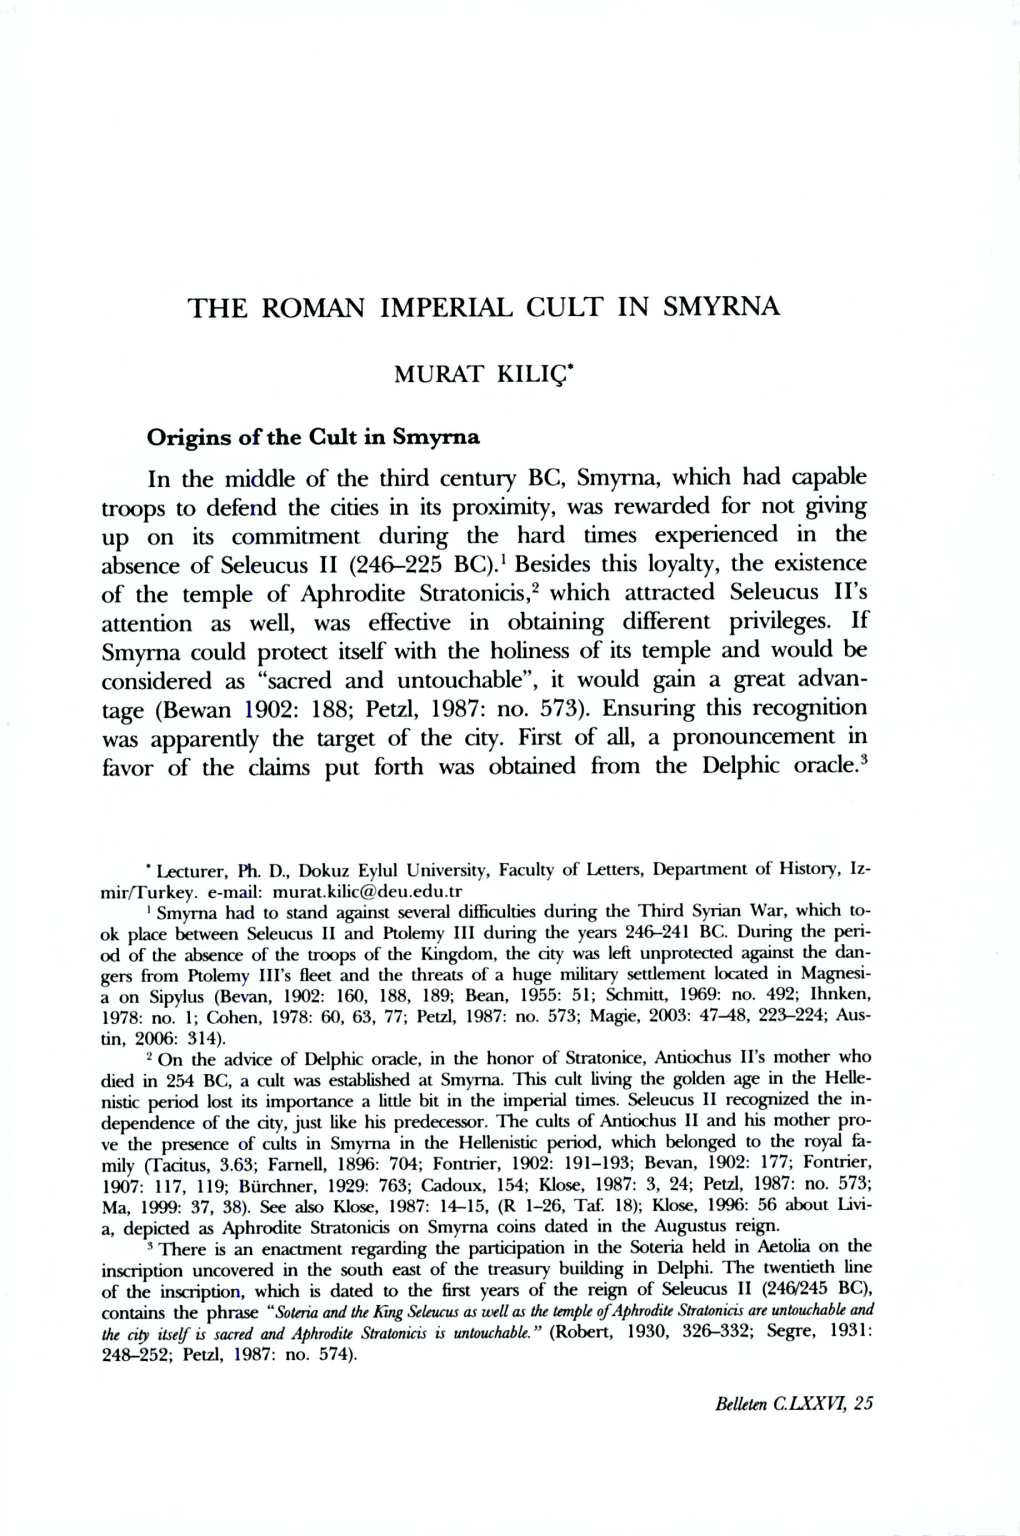 THE ROMAN IMPERIAL CULT in SMYRNA MURAT KILIÇ* in The